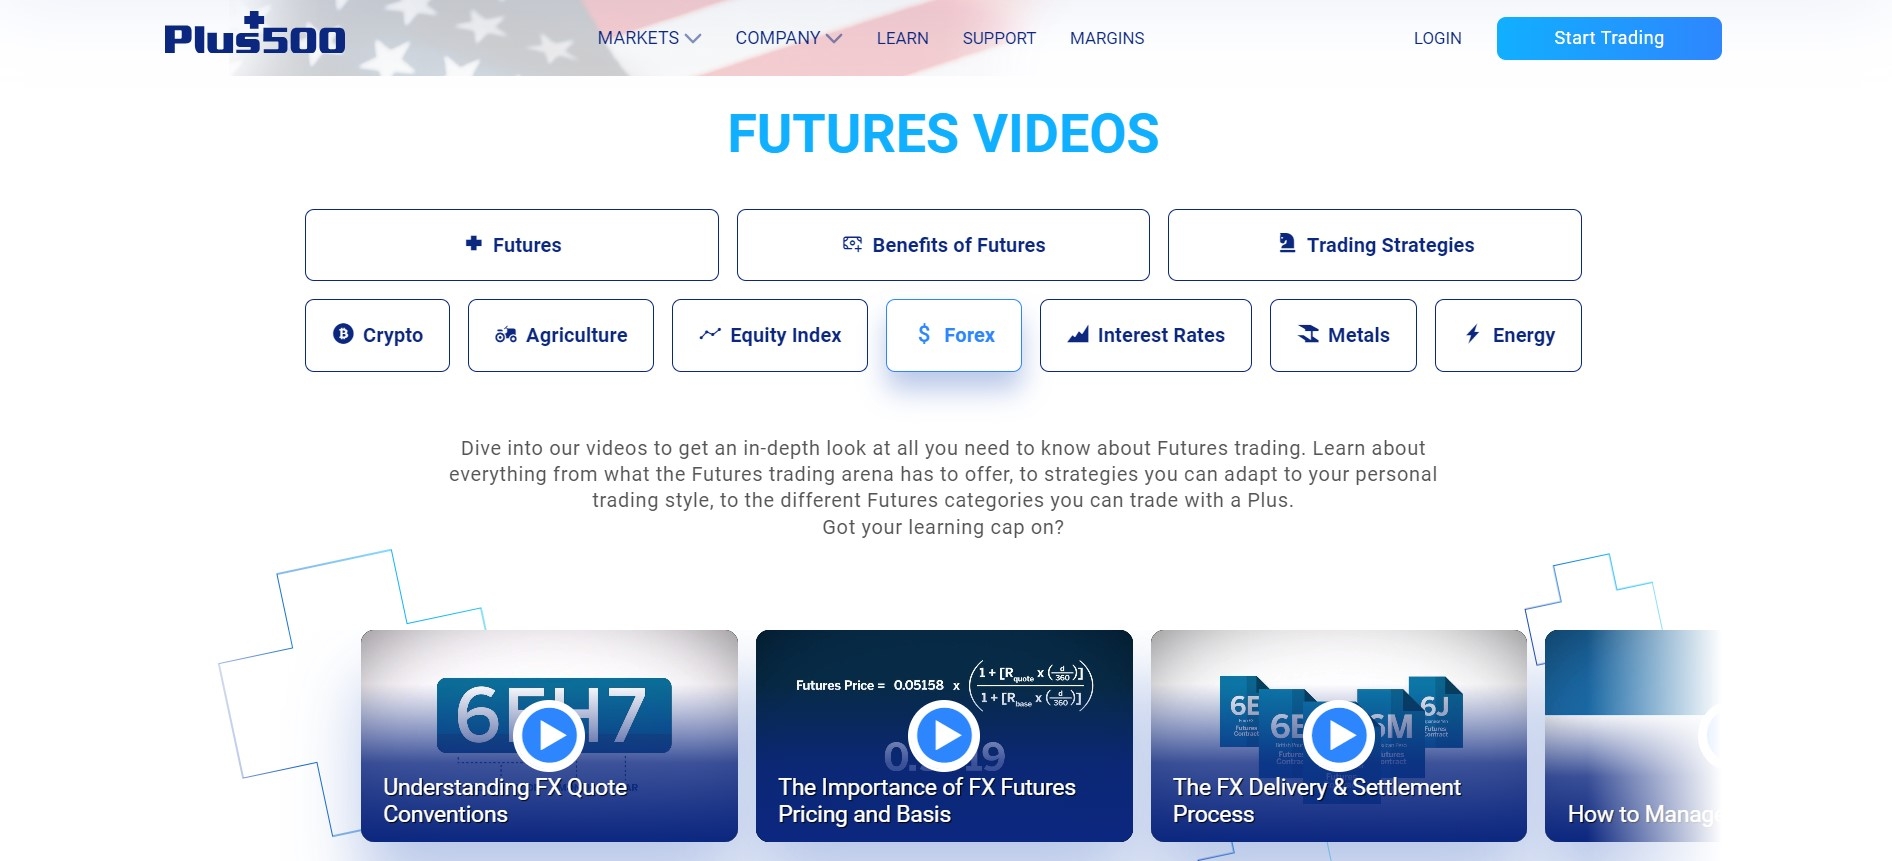 Plus500 Futures Video Tutorials